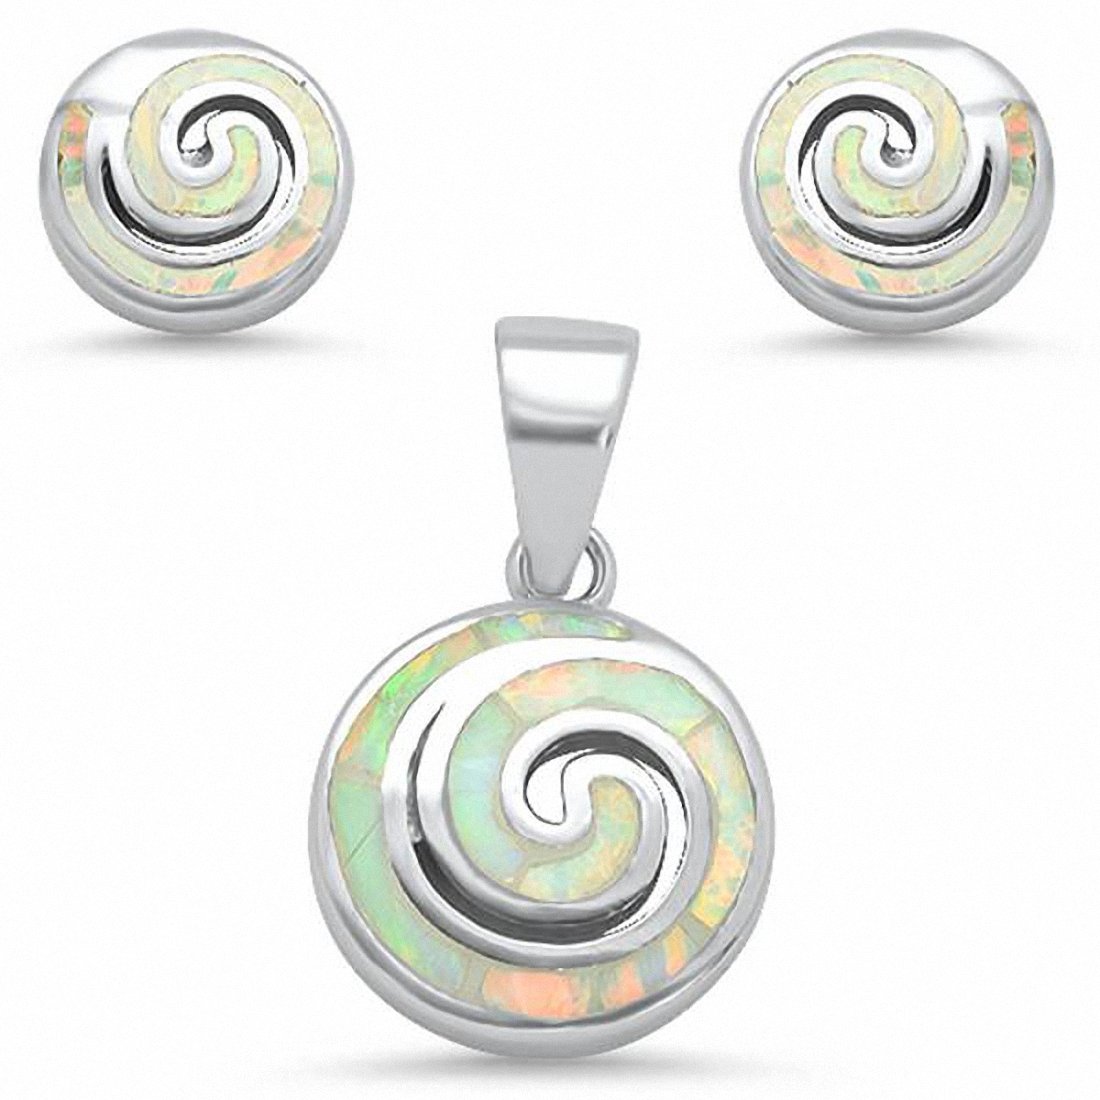 Spiral Swirl Jewelry Set Pendant Earrings Created Opal 925 Sterling Silver